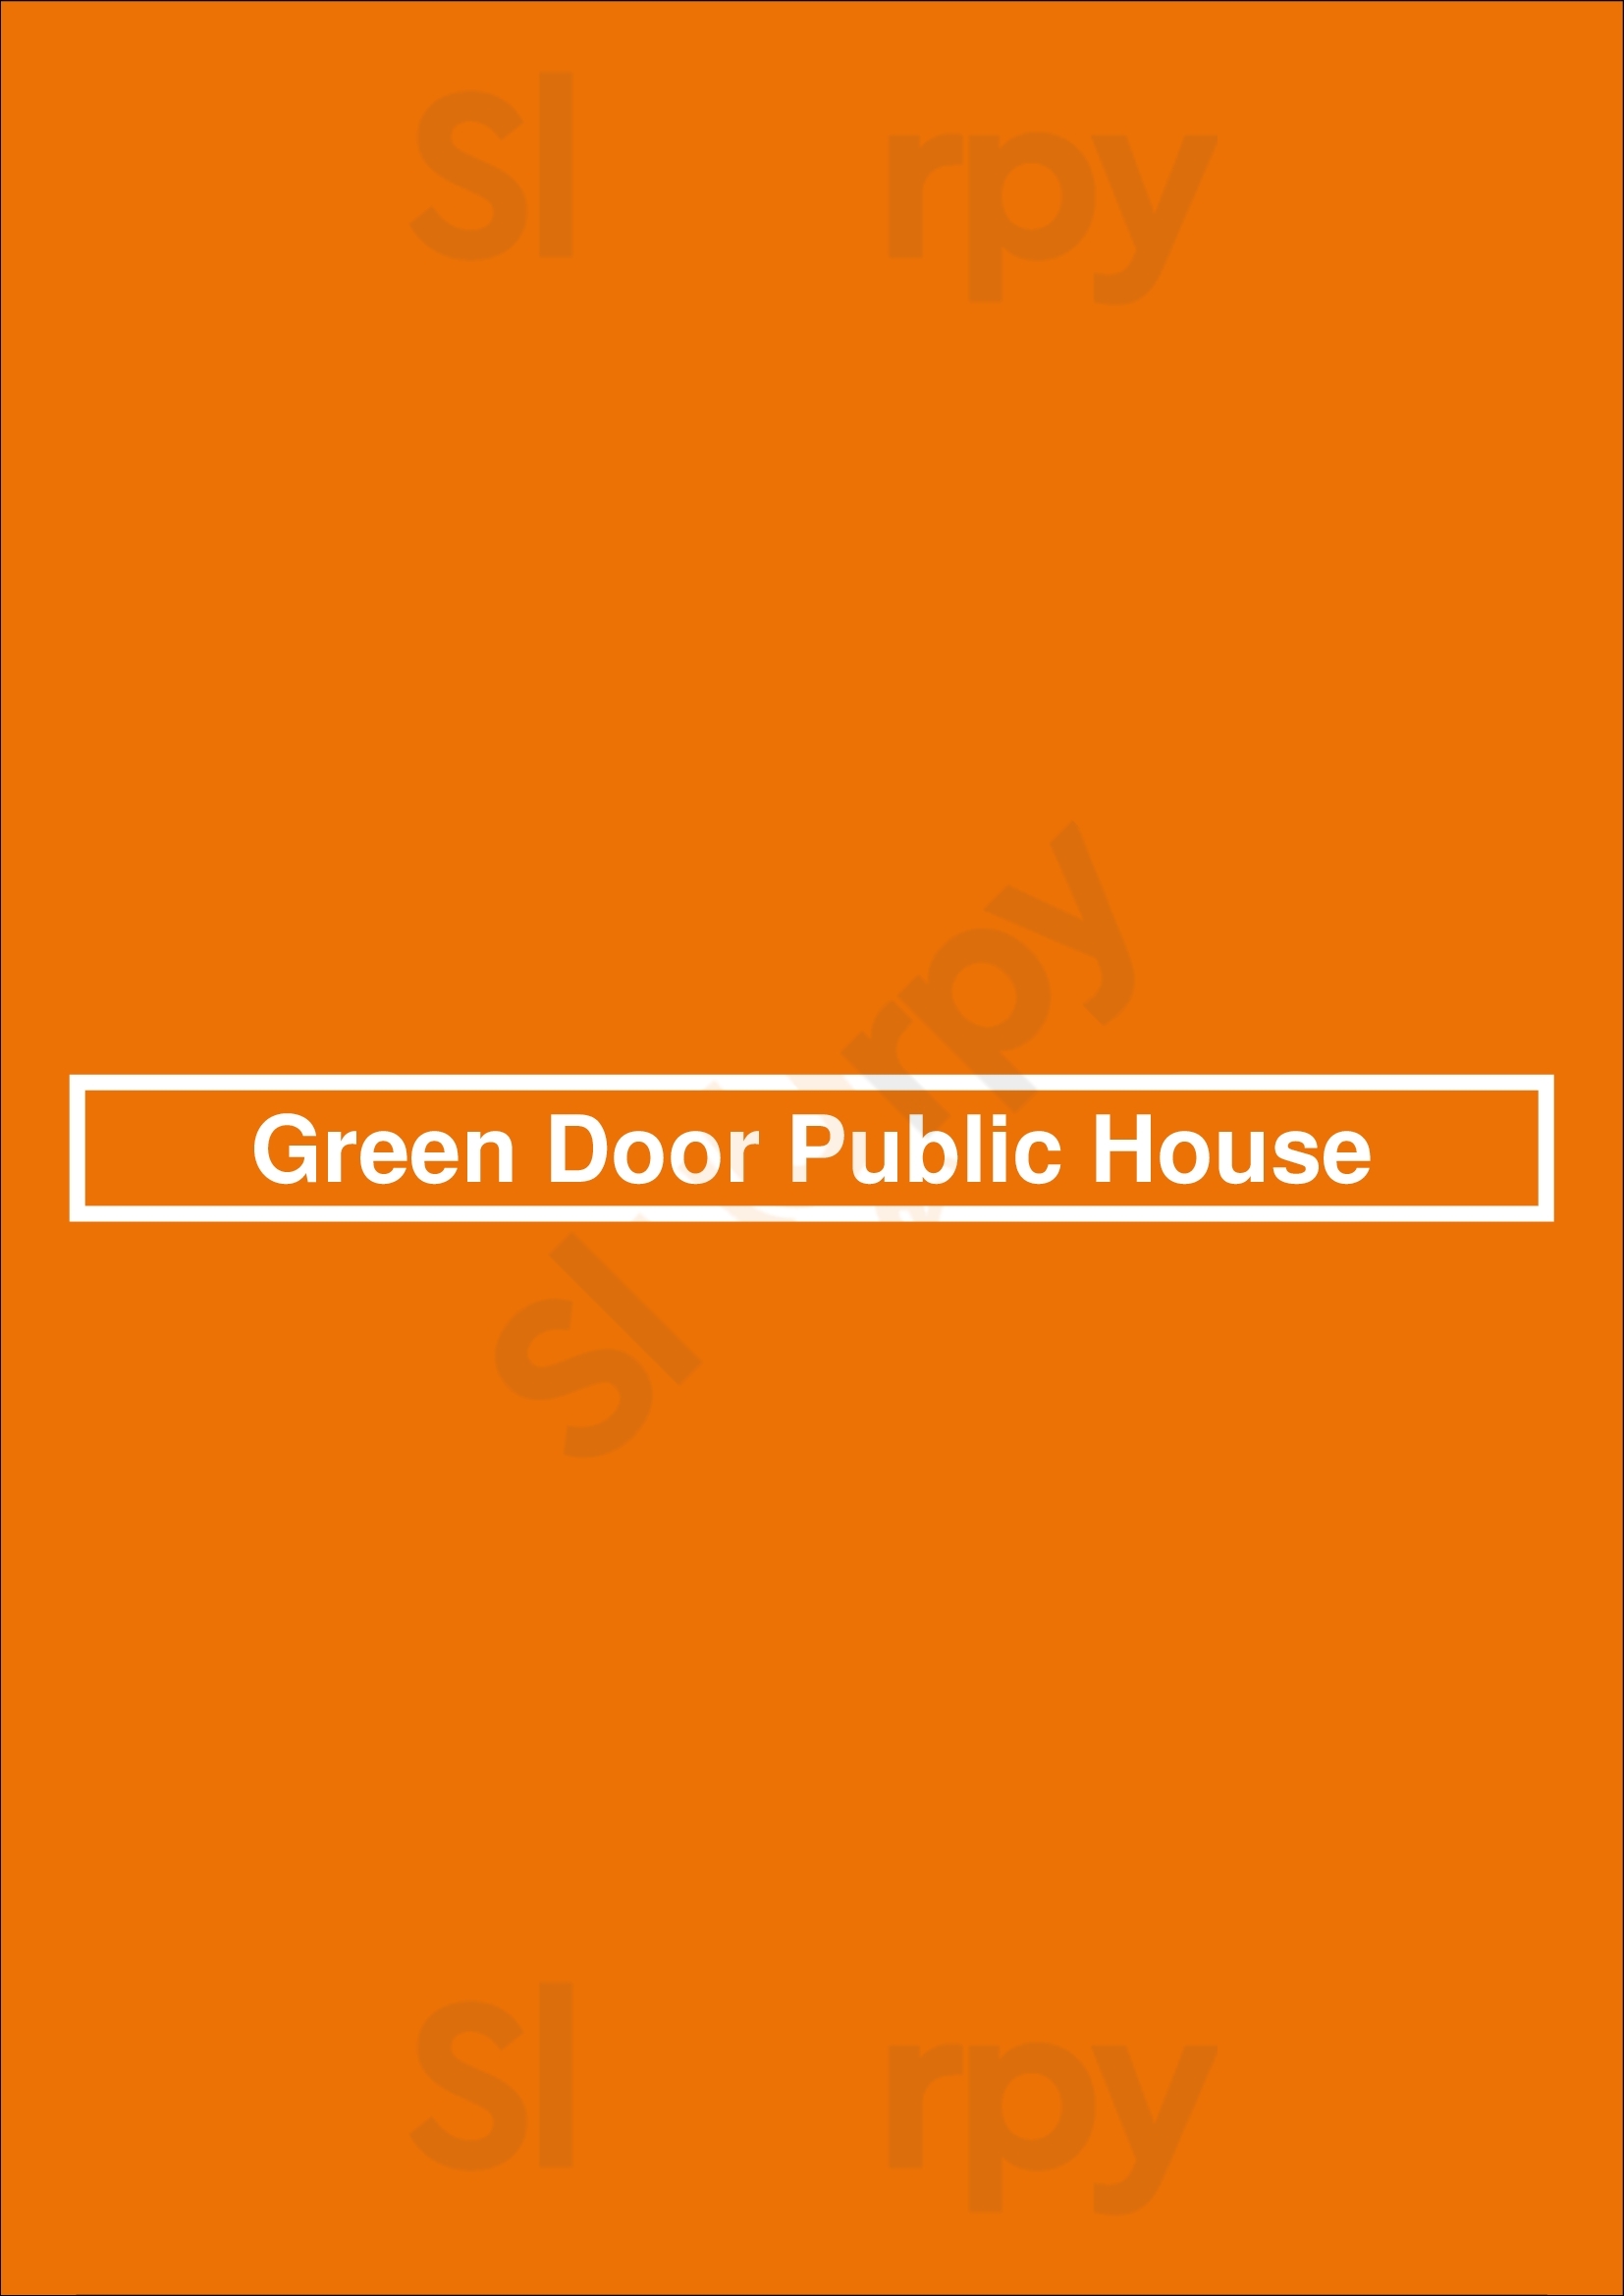 Green Door Public House Dallas Menu - 1